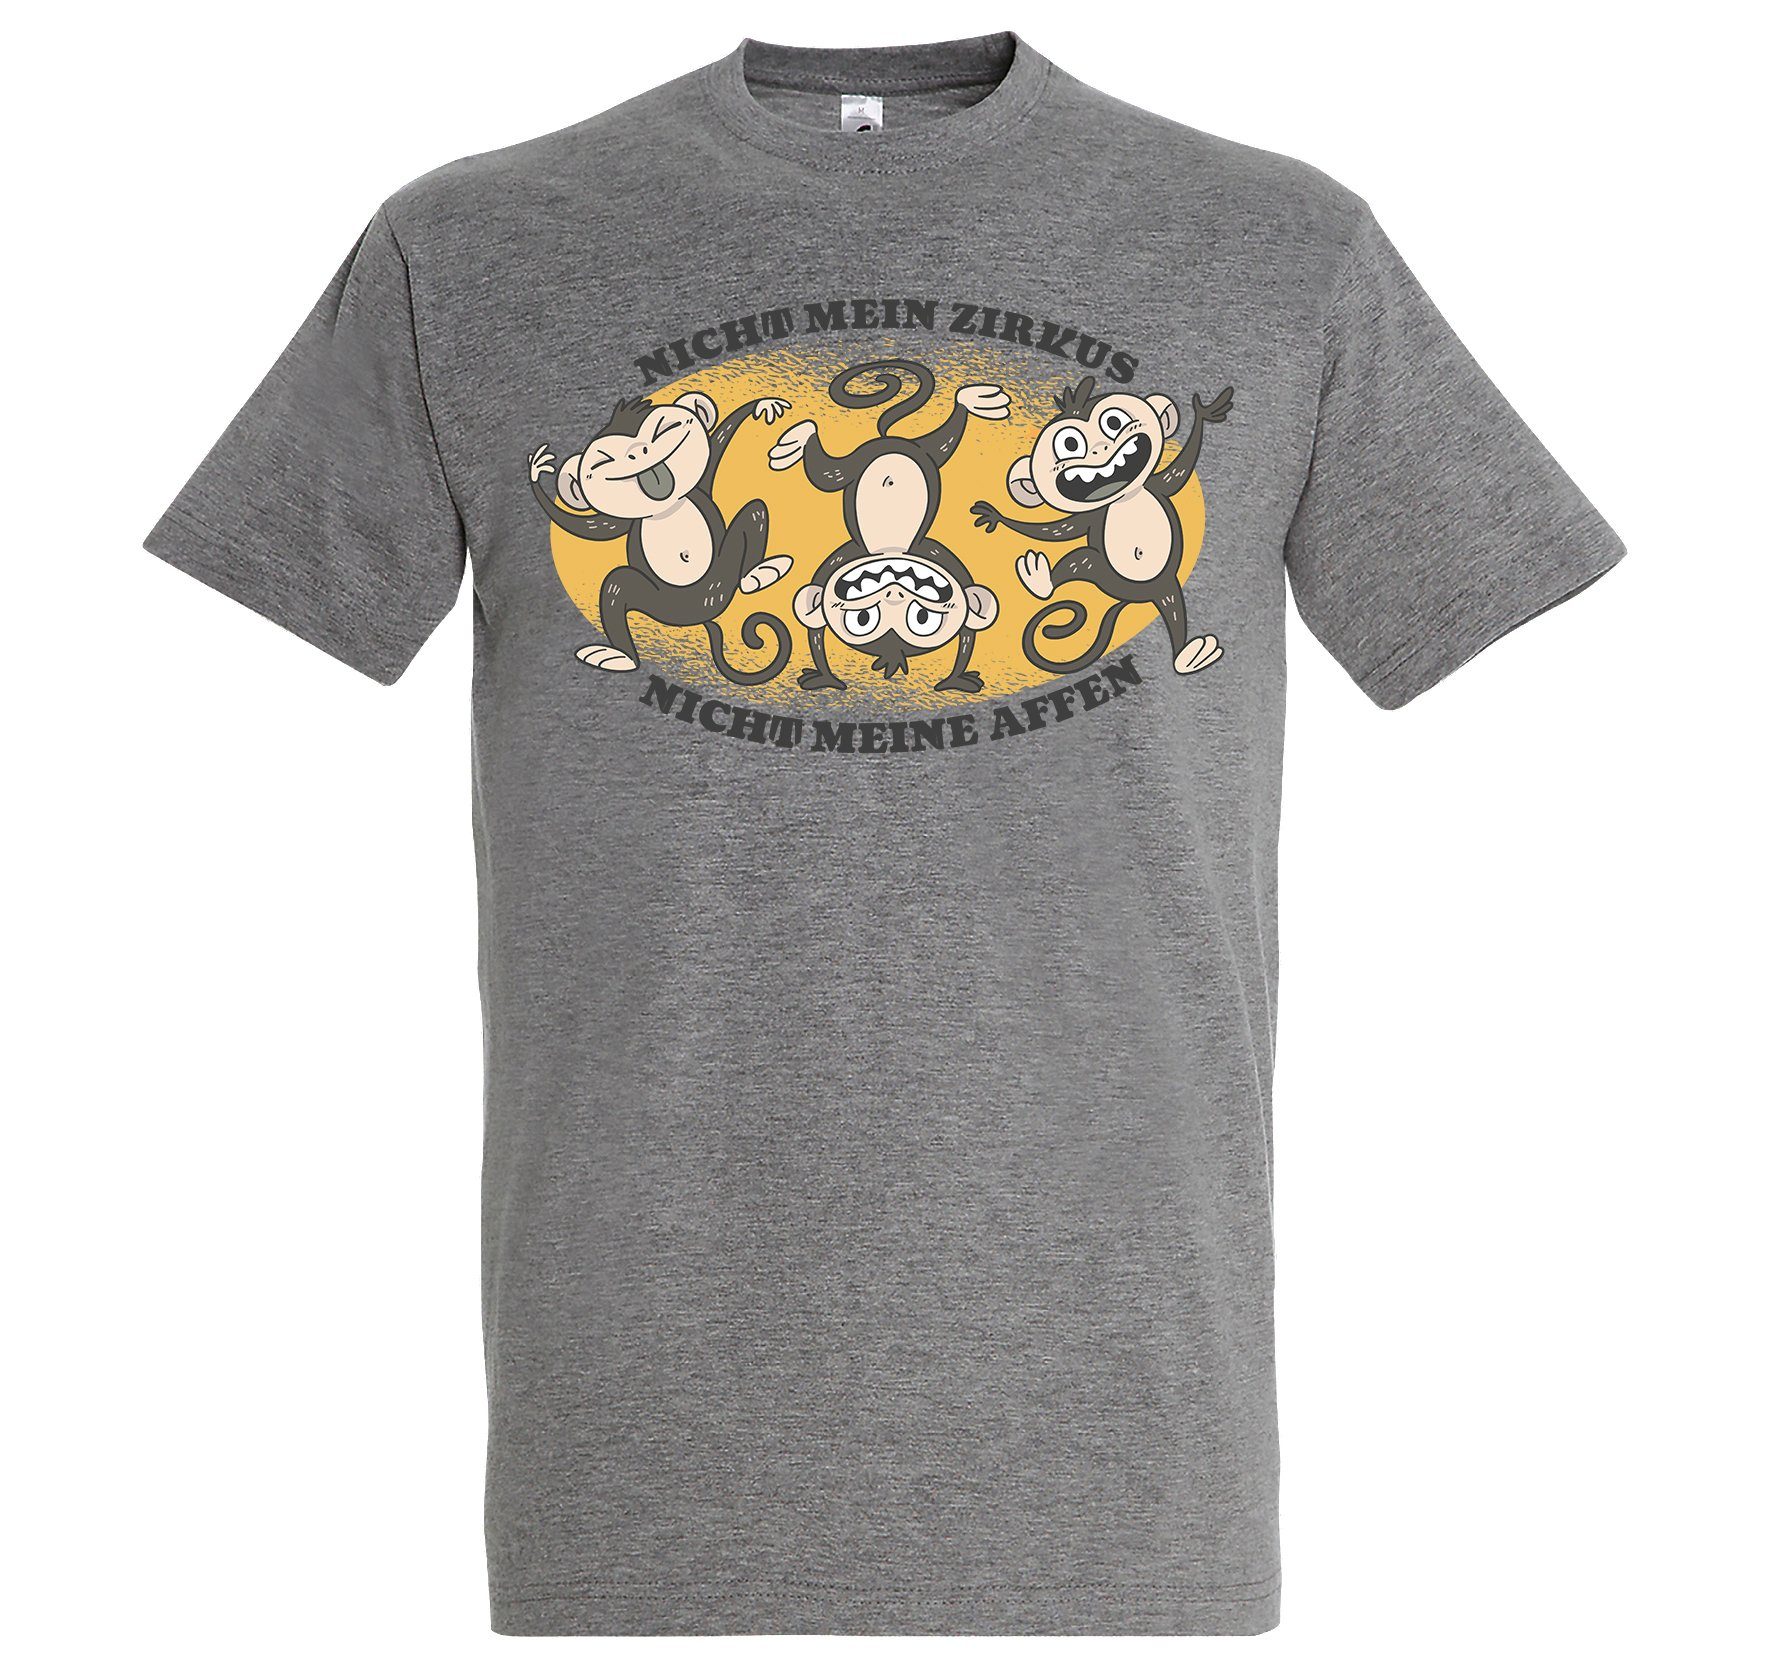 Youth Designz Print-Shirt "Nicht mein Zirkus" Herren T-Shirt mit lustigem Spruch Grau